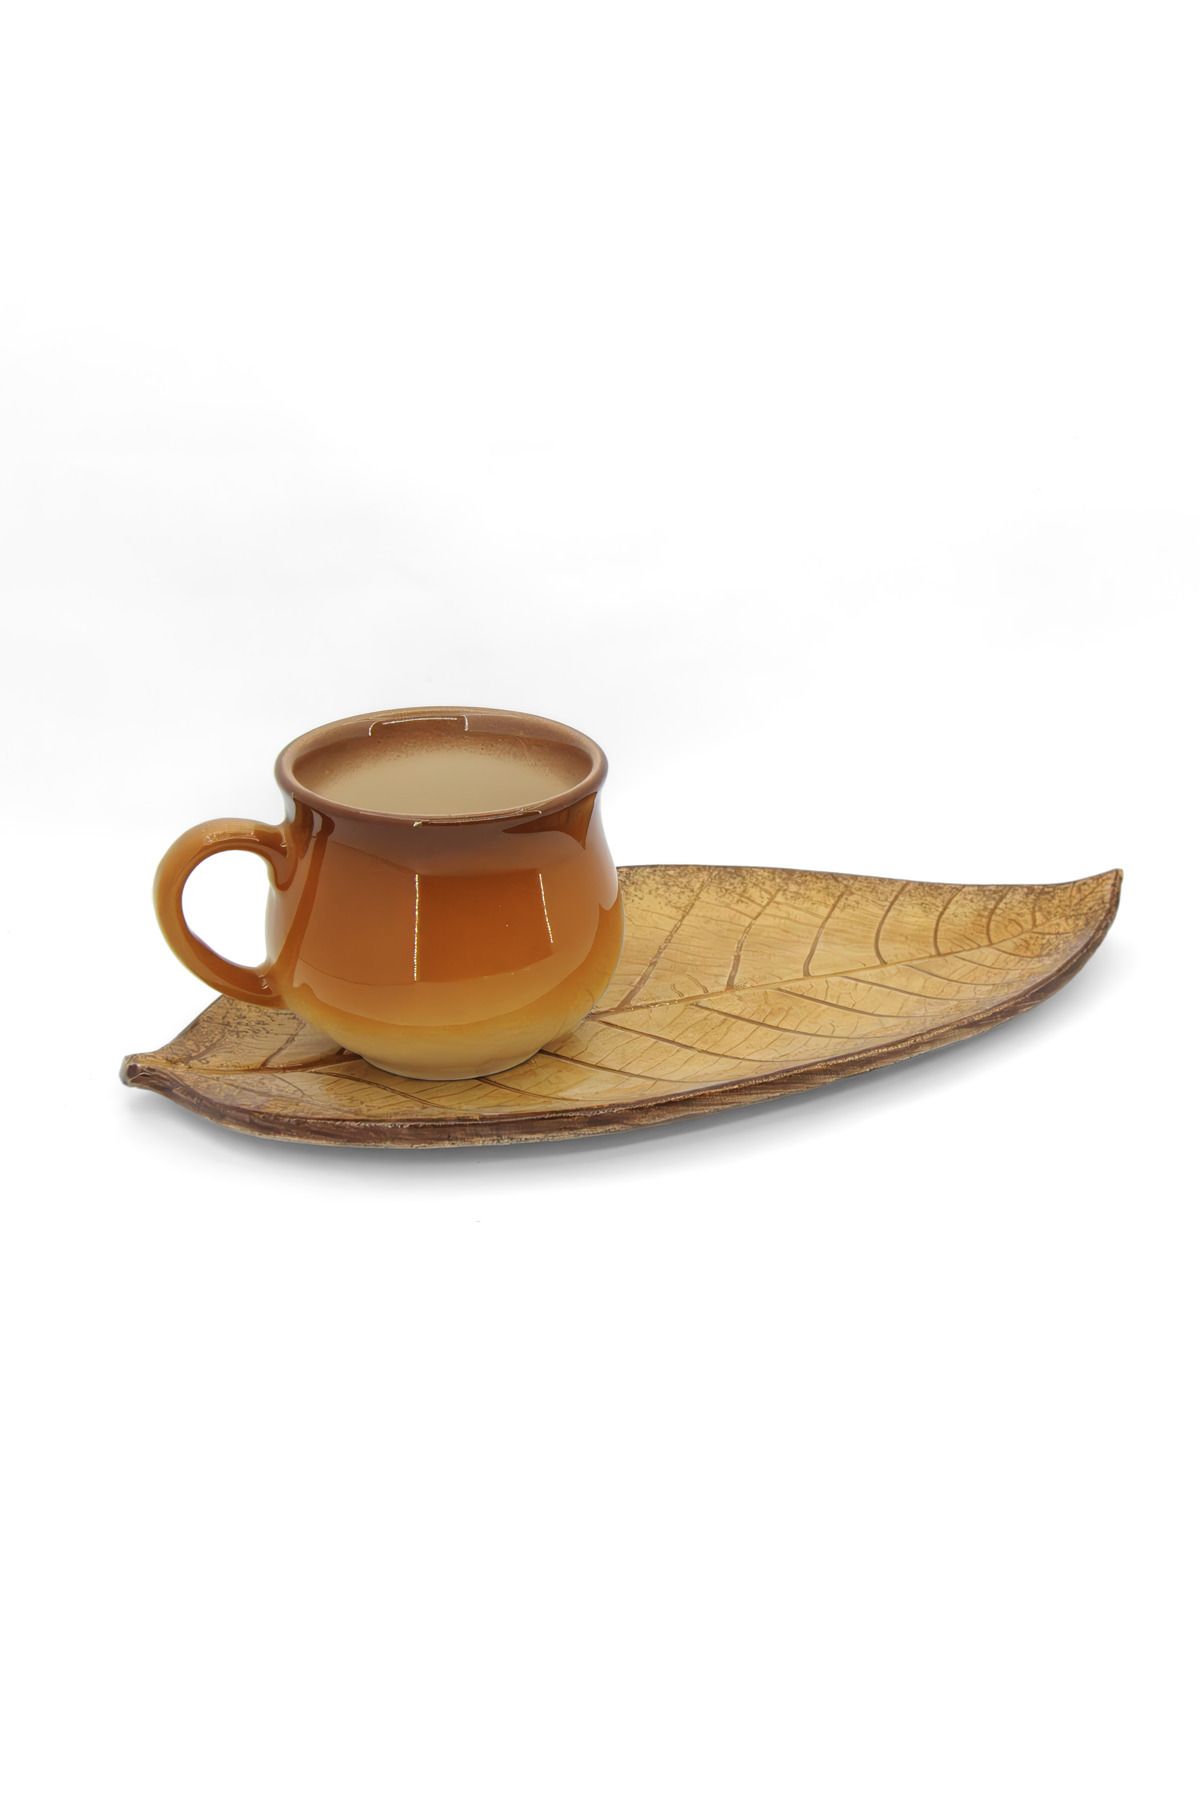 Loomart Dekoratif Düz Yaprak Tasarımlı El Yapımı Seramik Tek Kişilik Kahve Fincanı Seti - Kahverengi